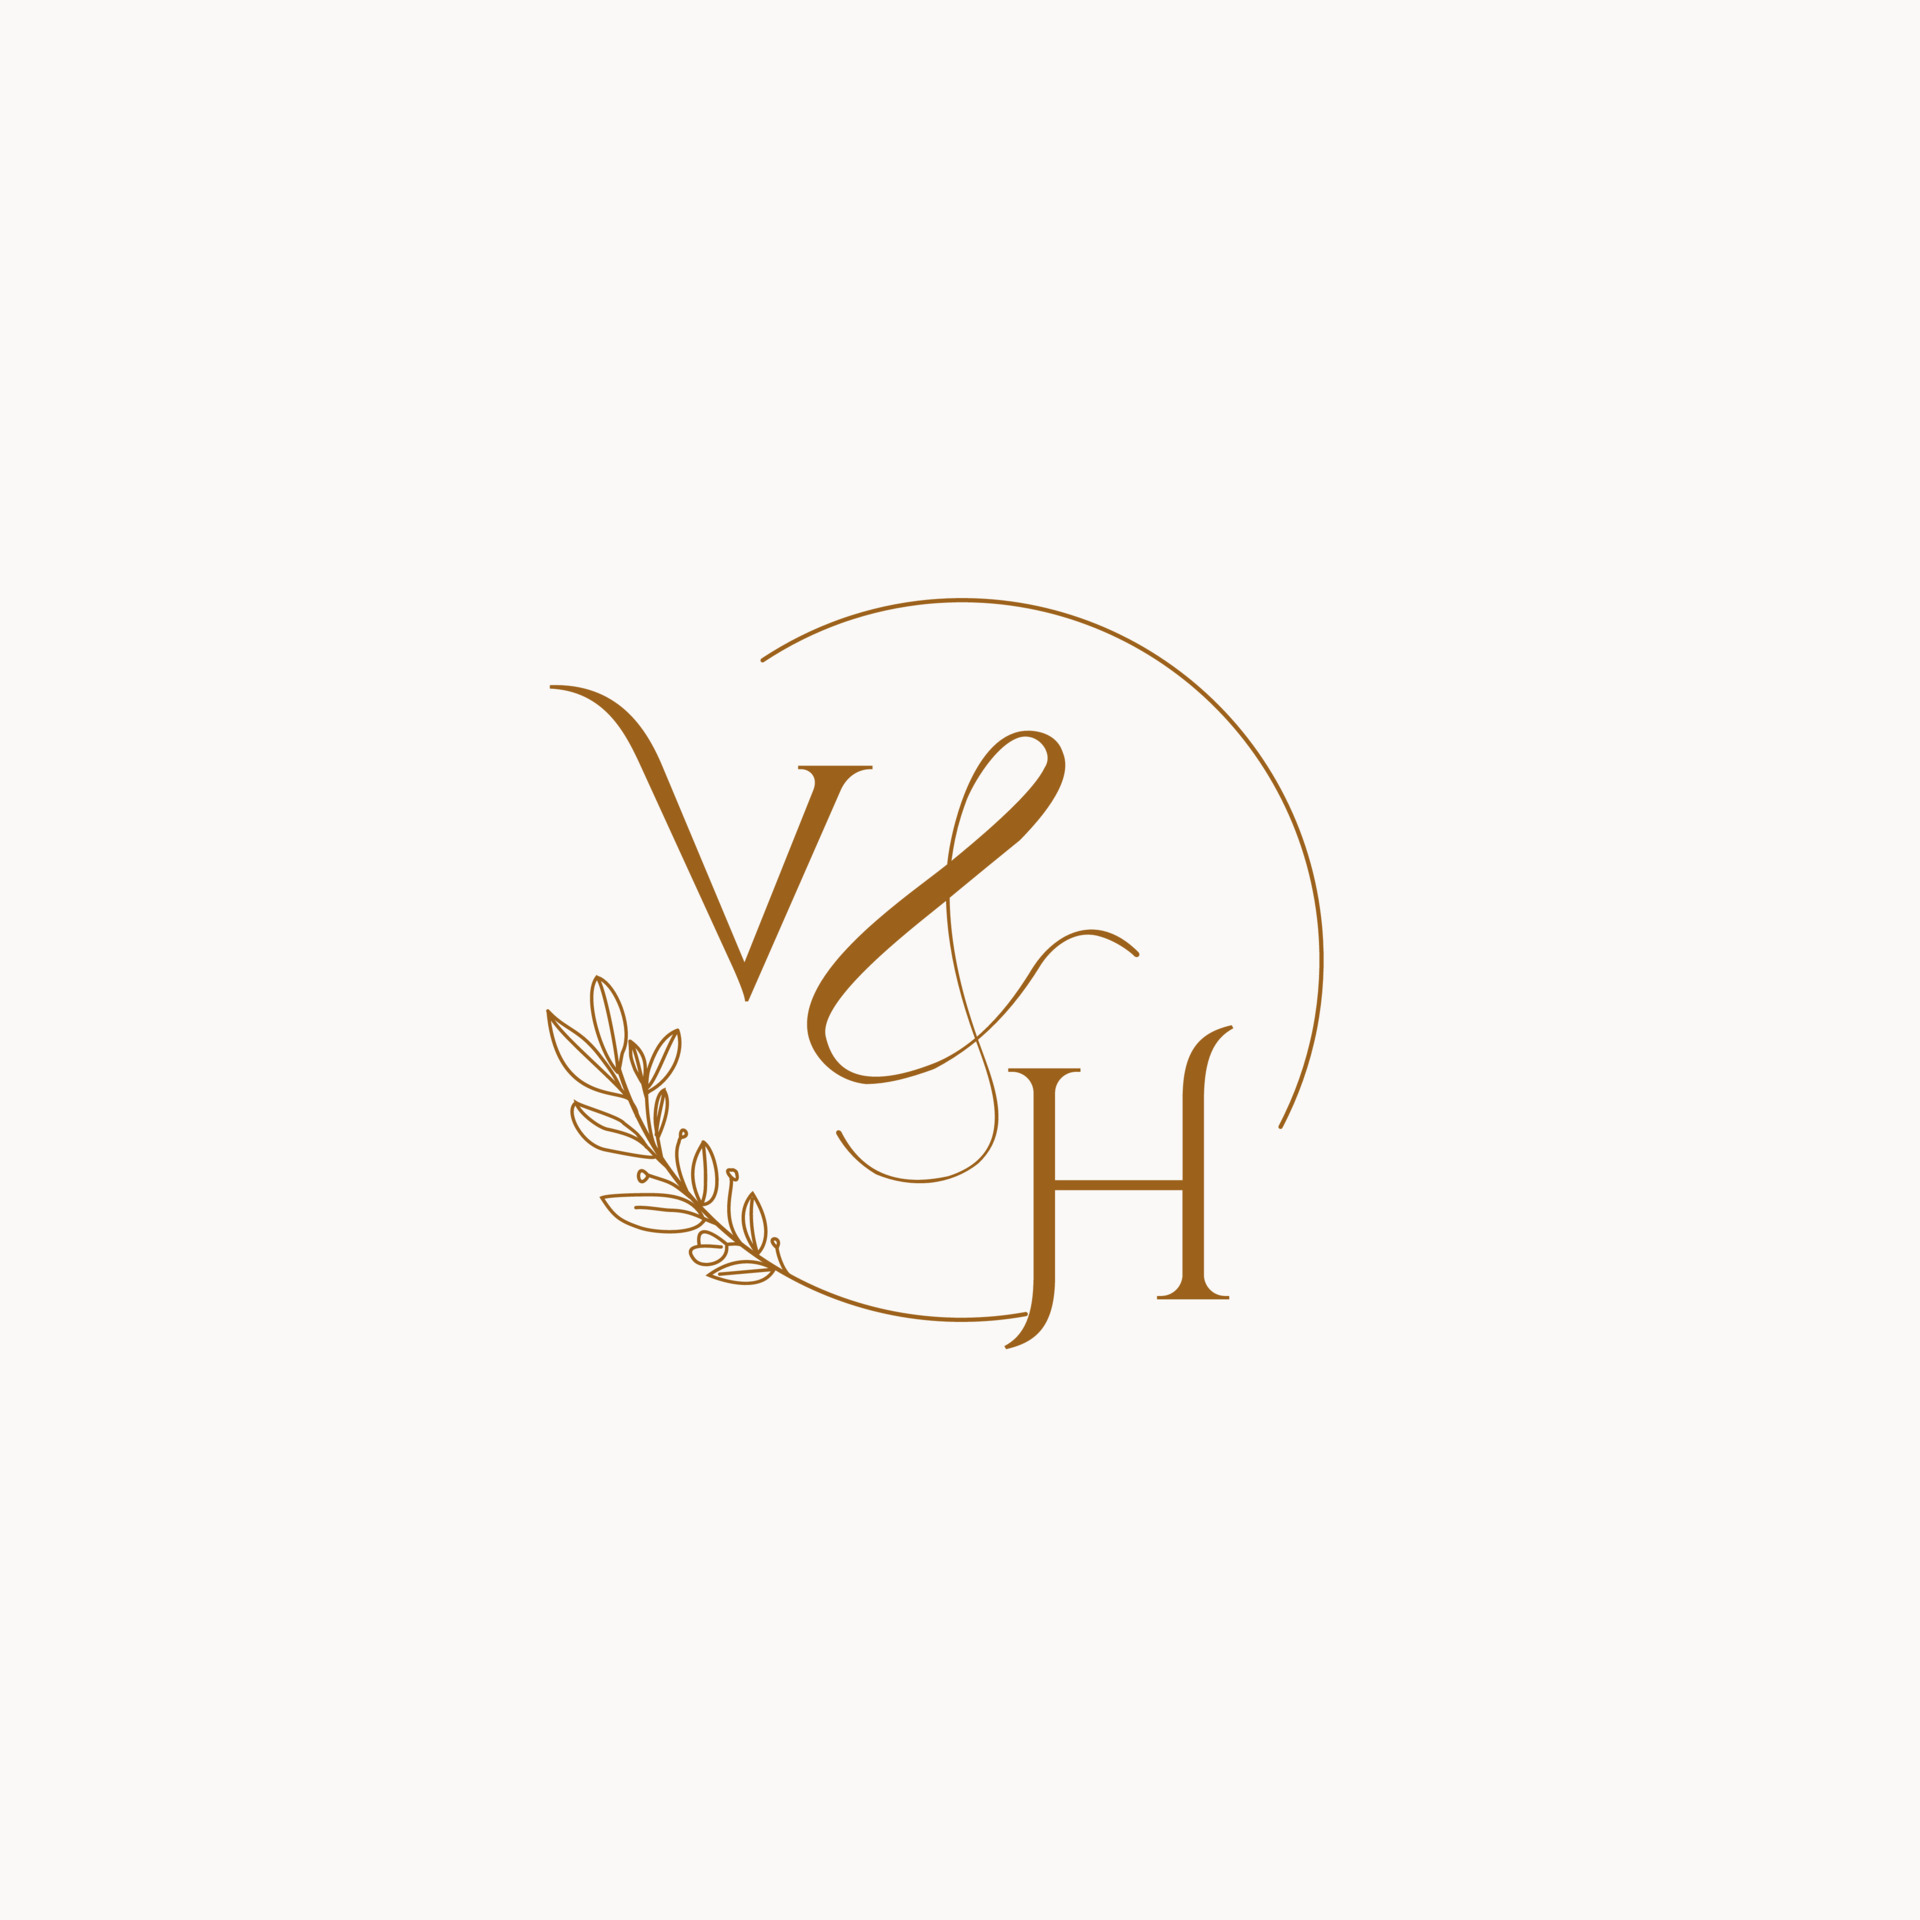 https://static.vecteezy.com/system/resources/previews/010/255/656/original/vh-initial-wedding-monogram-logo-vector.jpg